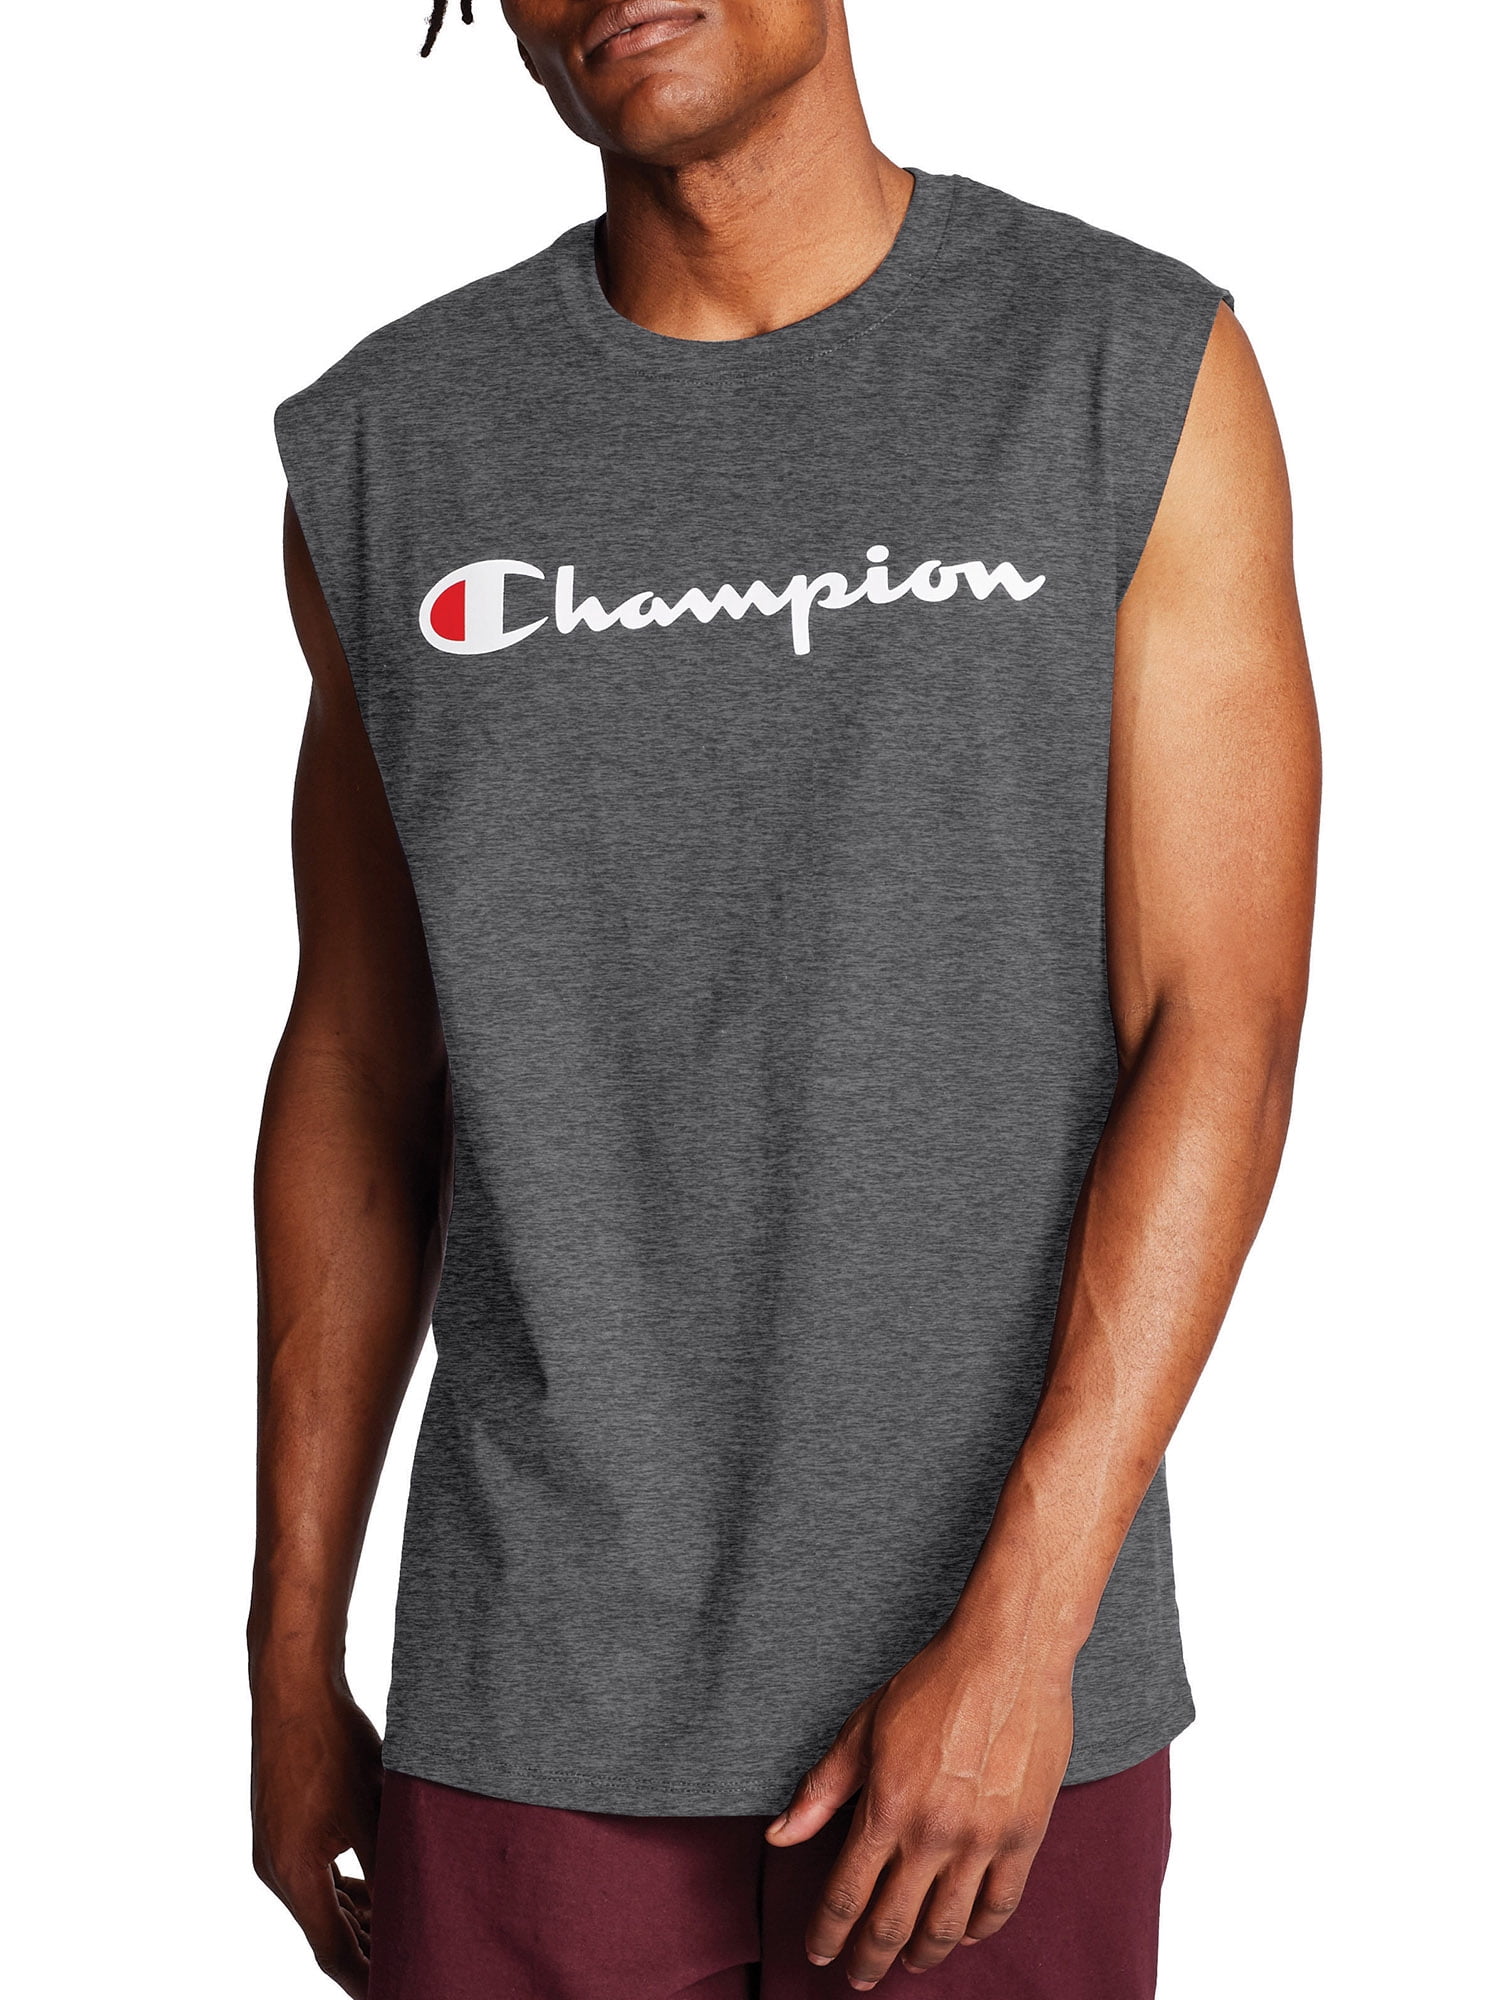 champion muscle shirts